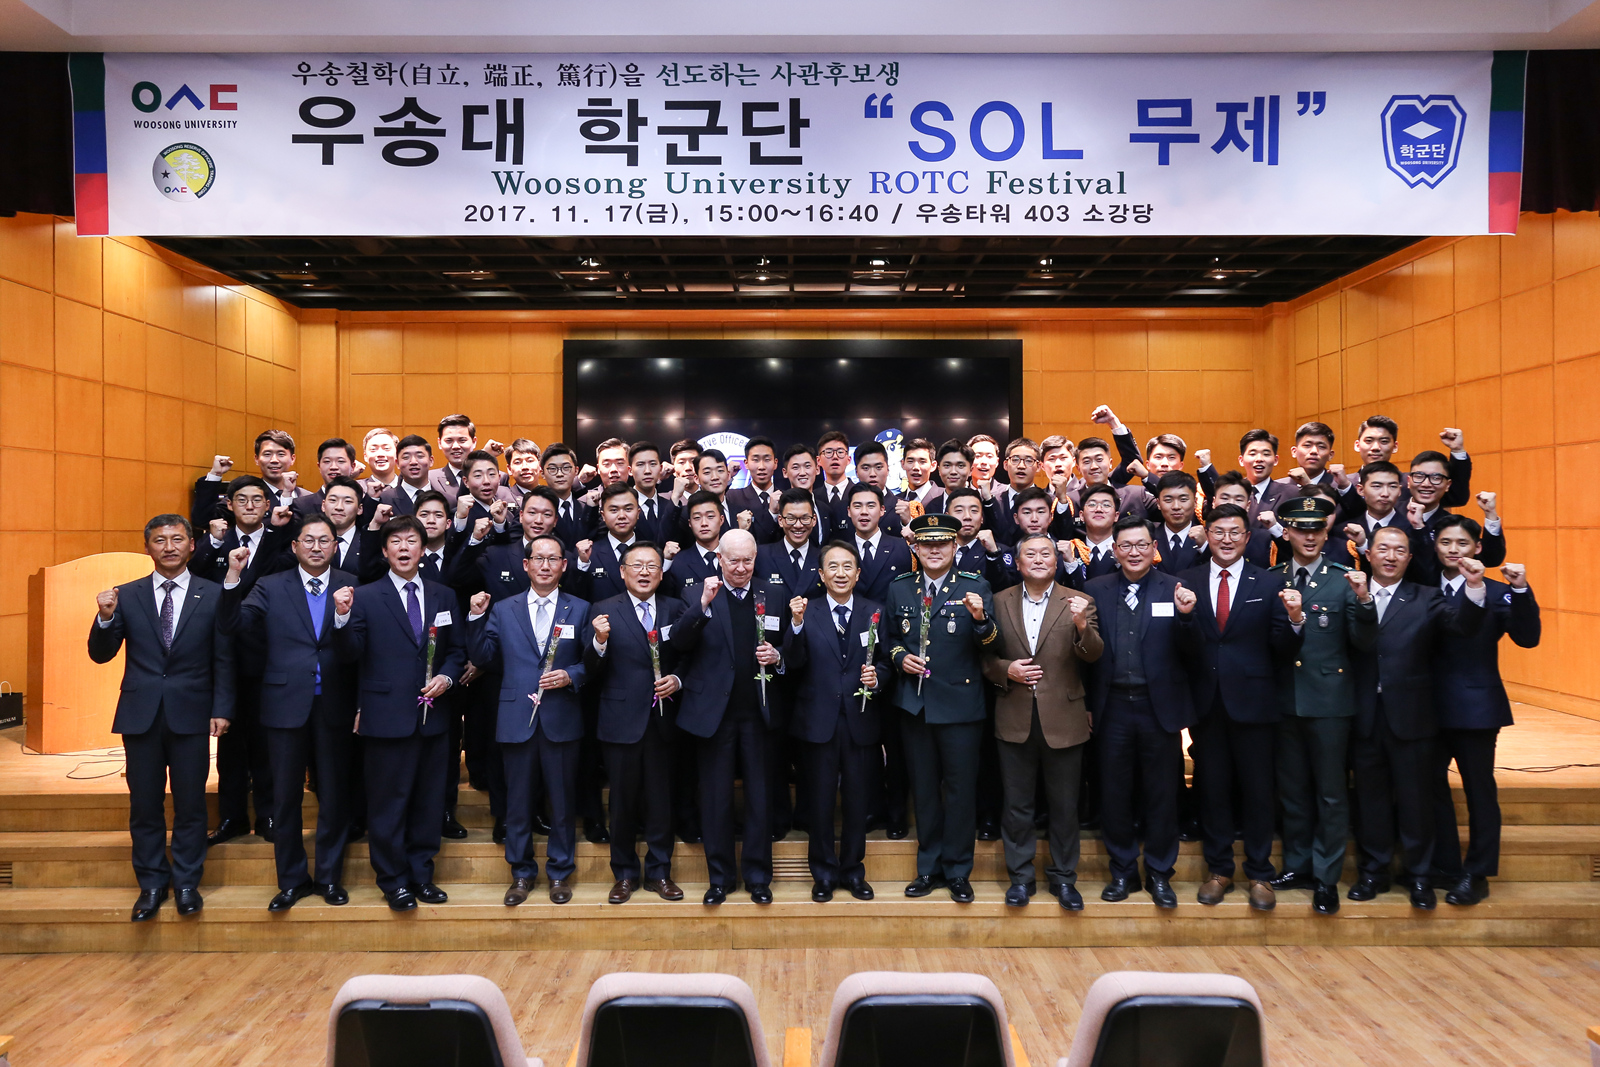 제 5회 우송대 학군단 “SOL 무제”